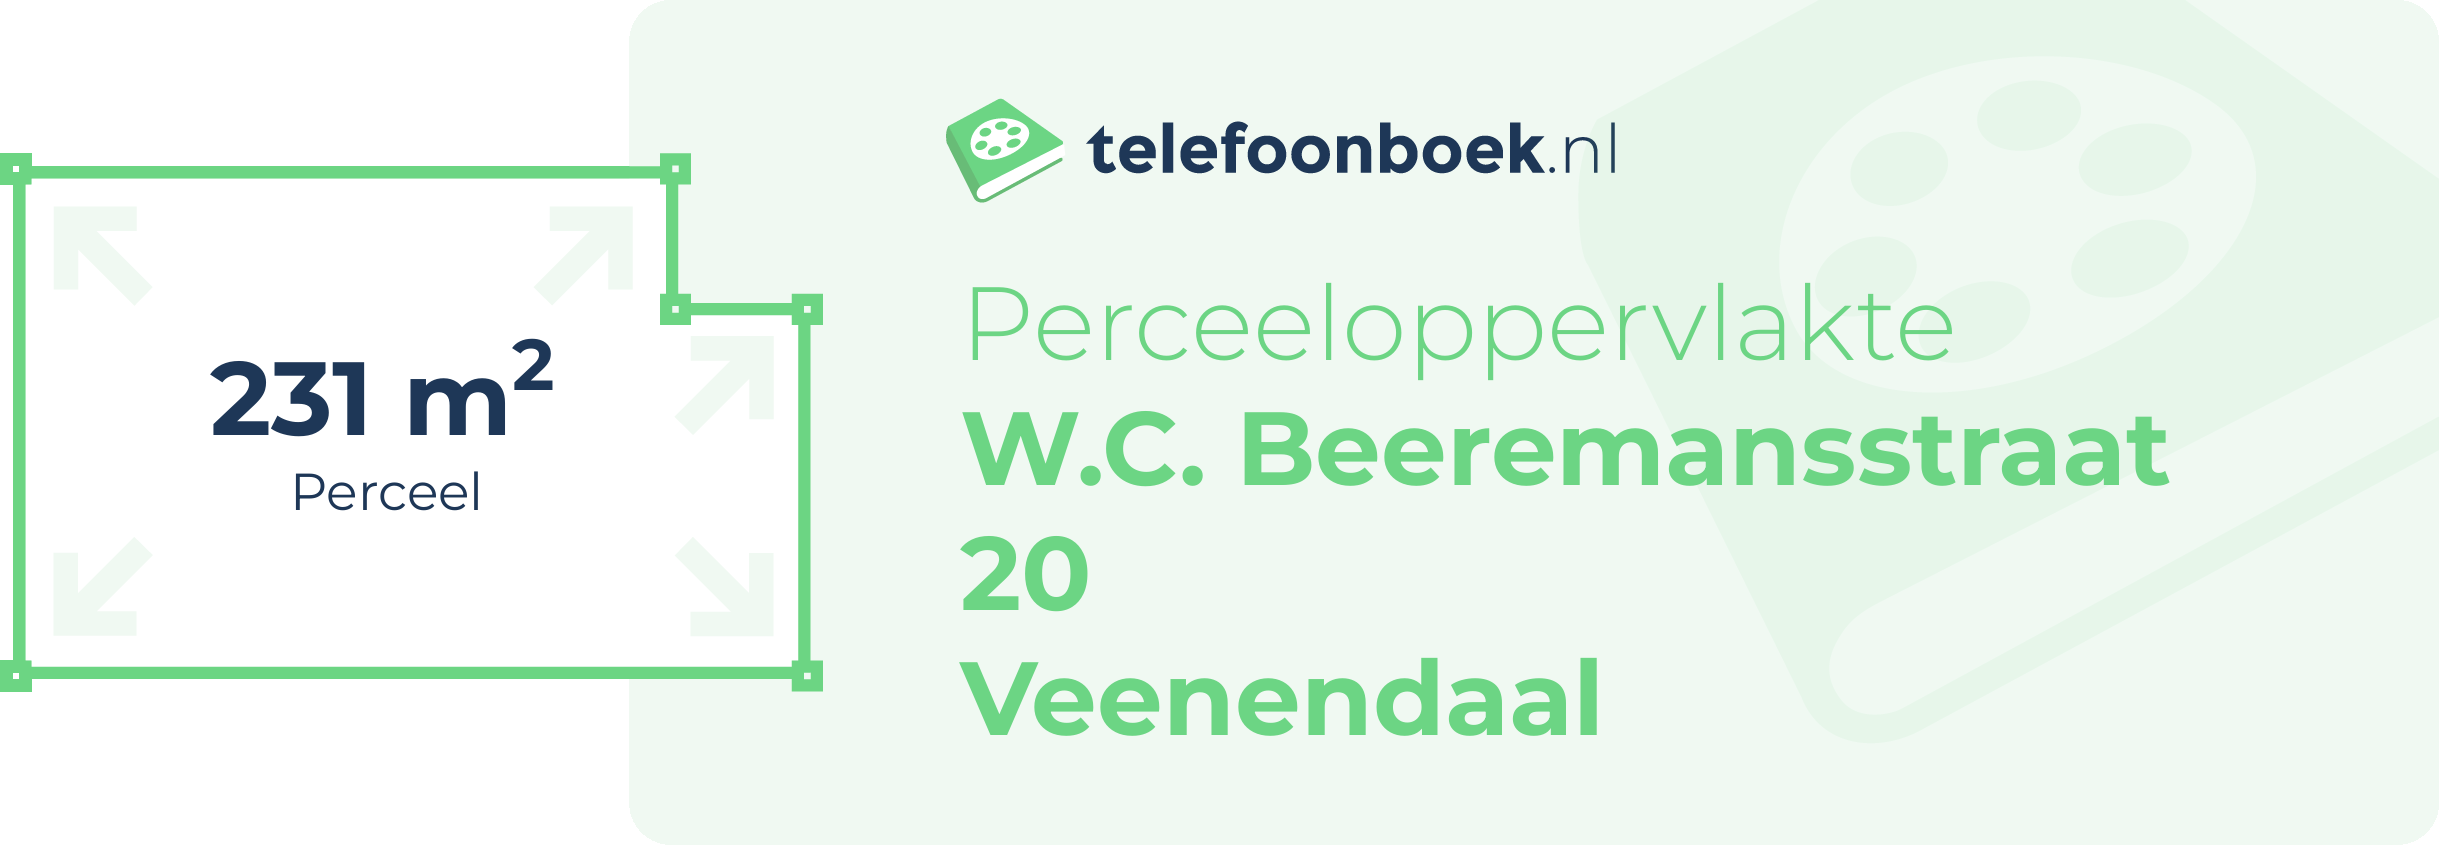 Perceeloppervlakte W.C. Beeremansstraat 20 Veenendaal